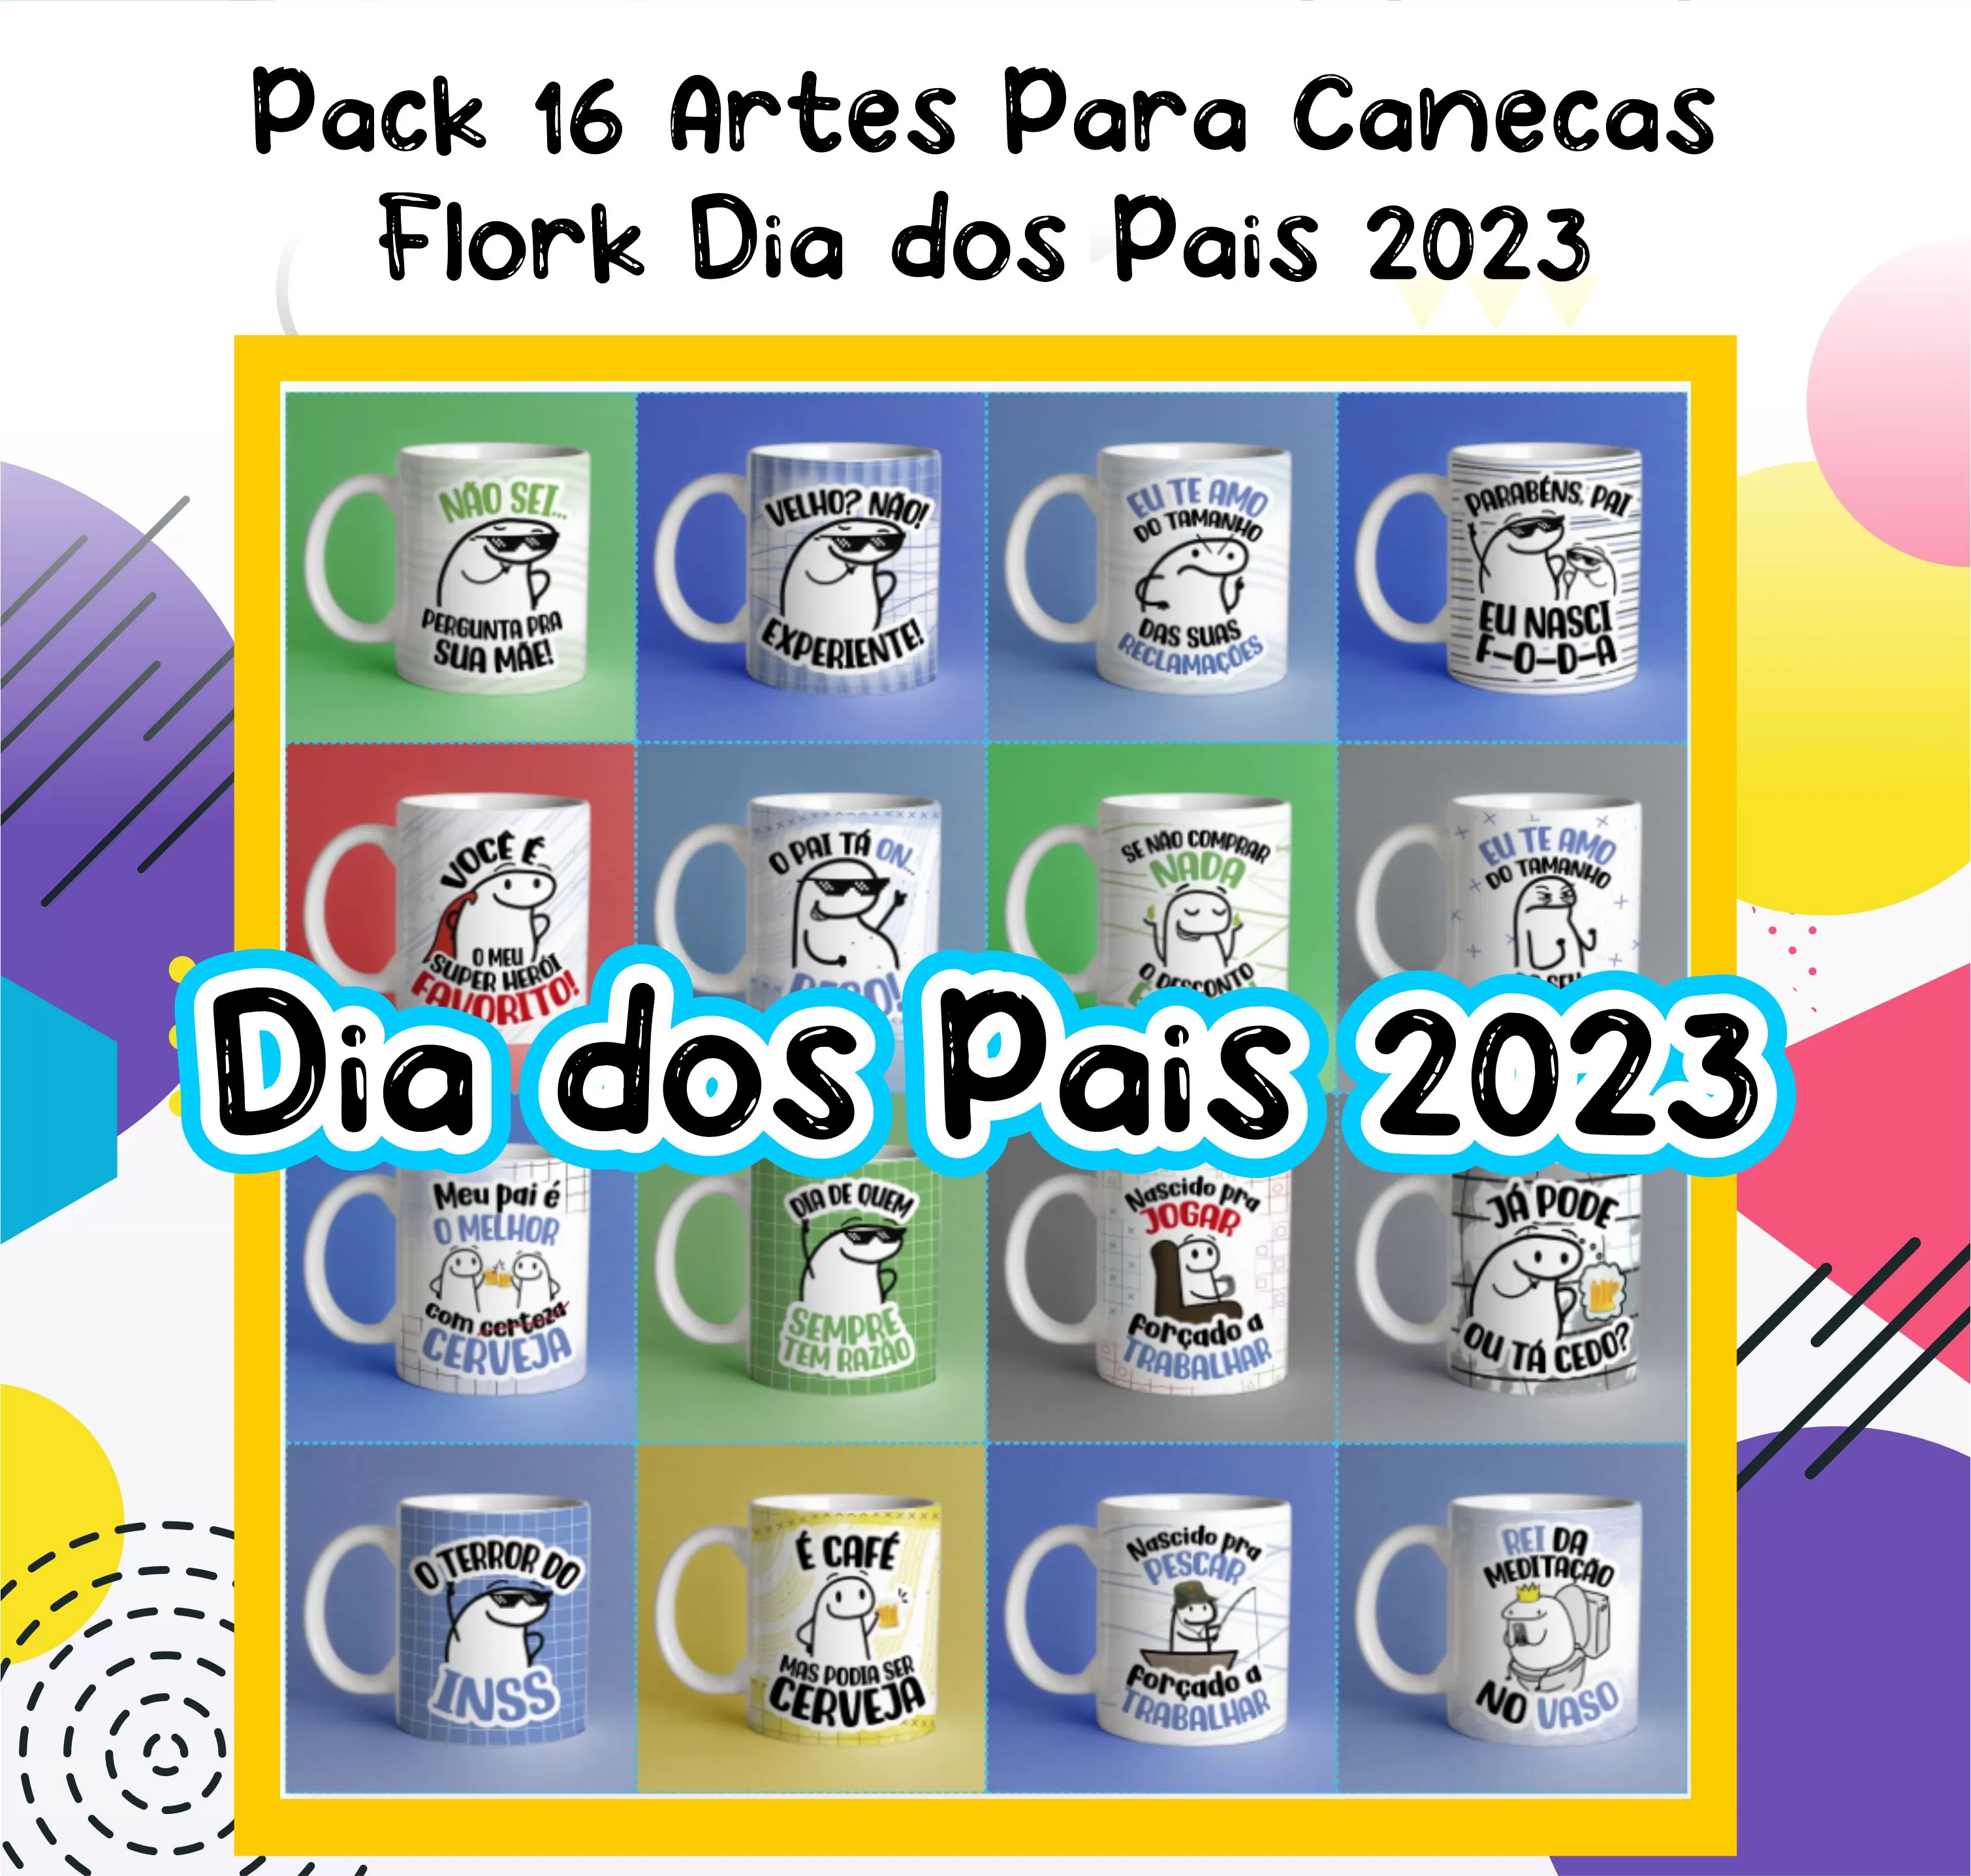 Artes Para Caneca Dia Dos Pais 2023 Flork: Celebre com Estilo